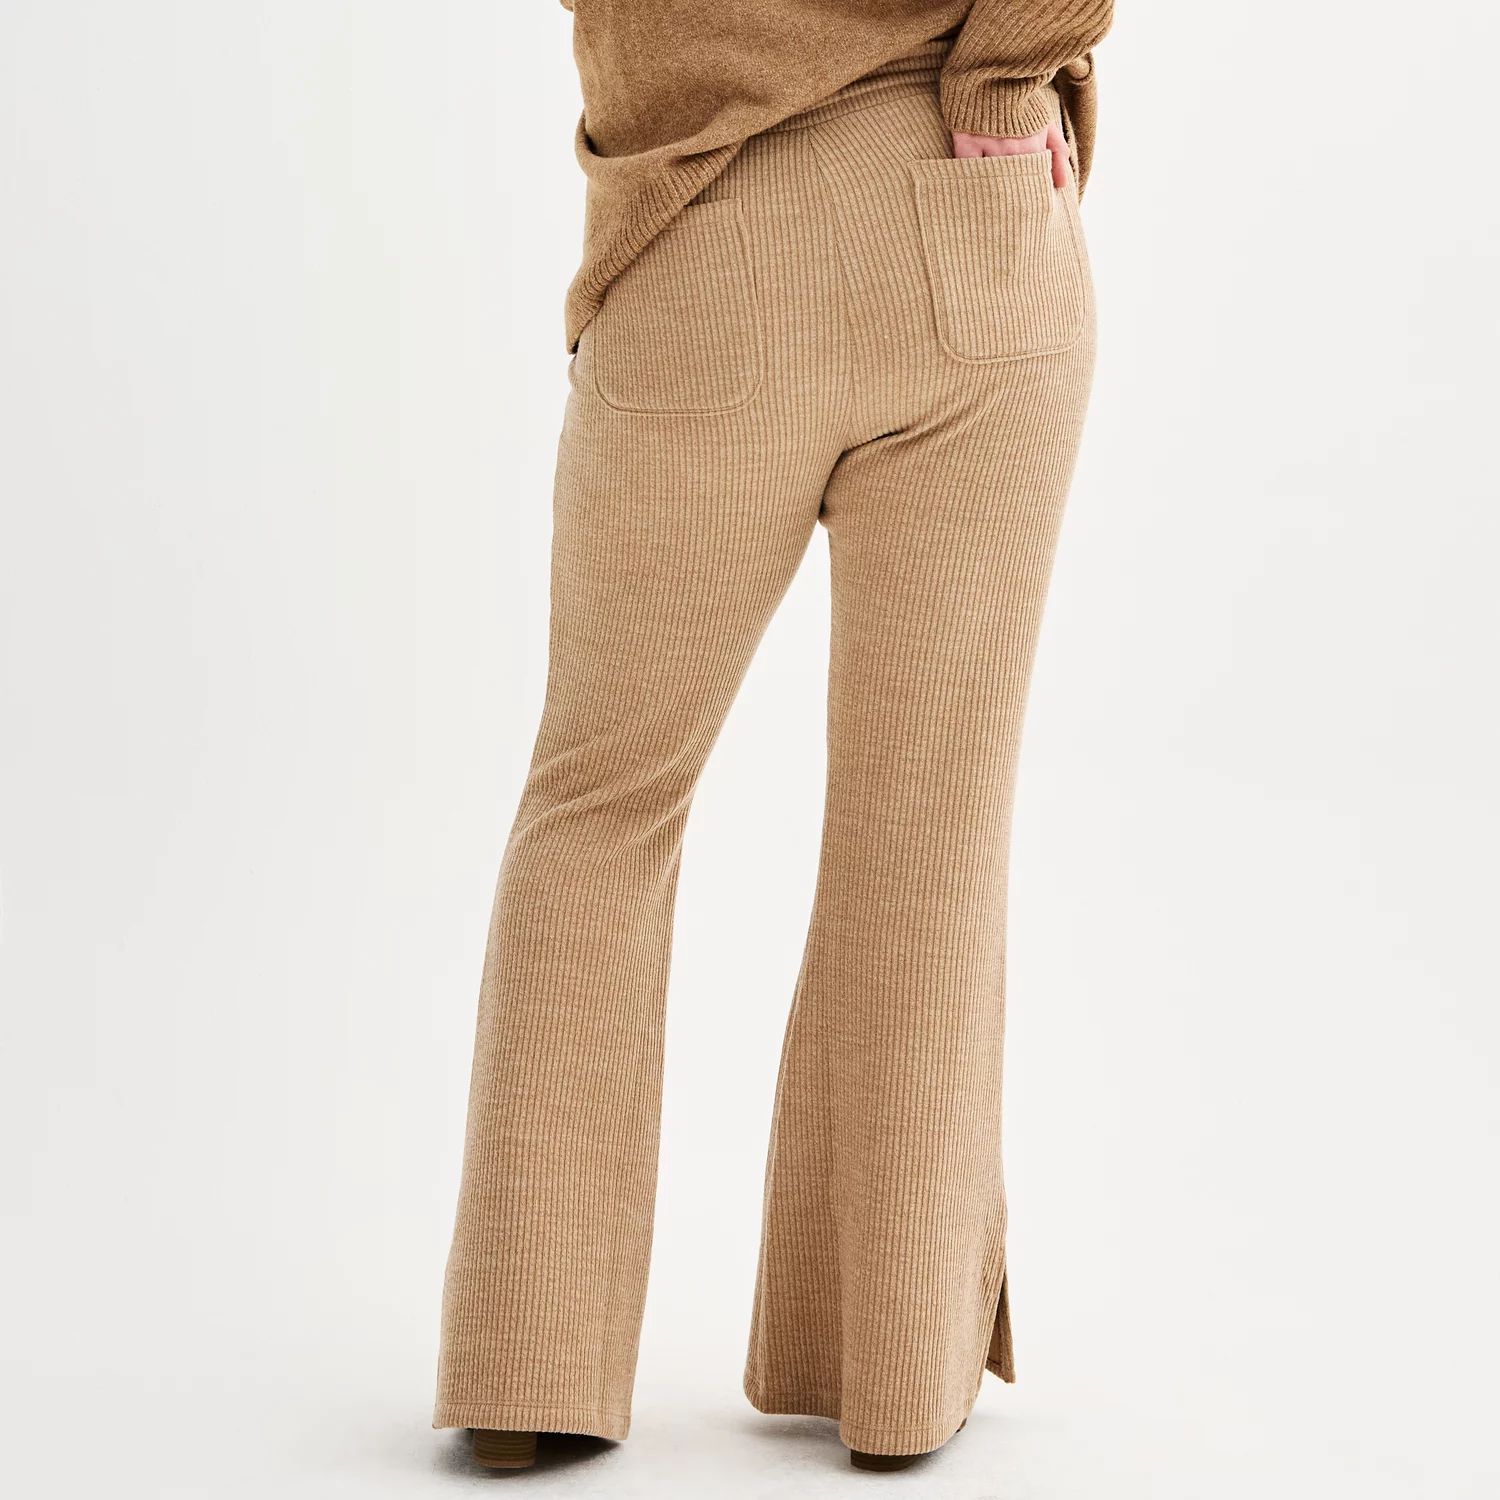 Трикотажные брюки-клеш SO больших размеров для юниоров с высокой посадкой SO кроссовки art brighton gelb